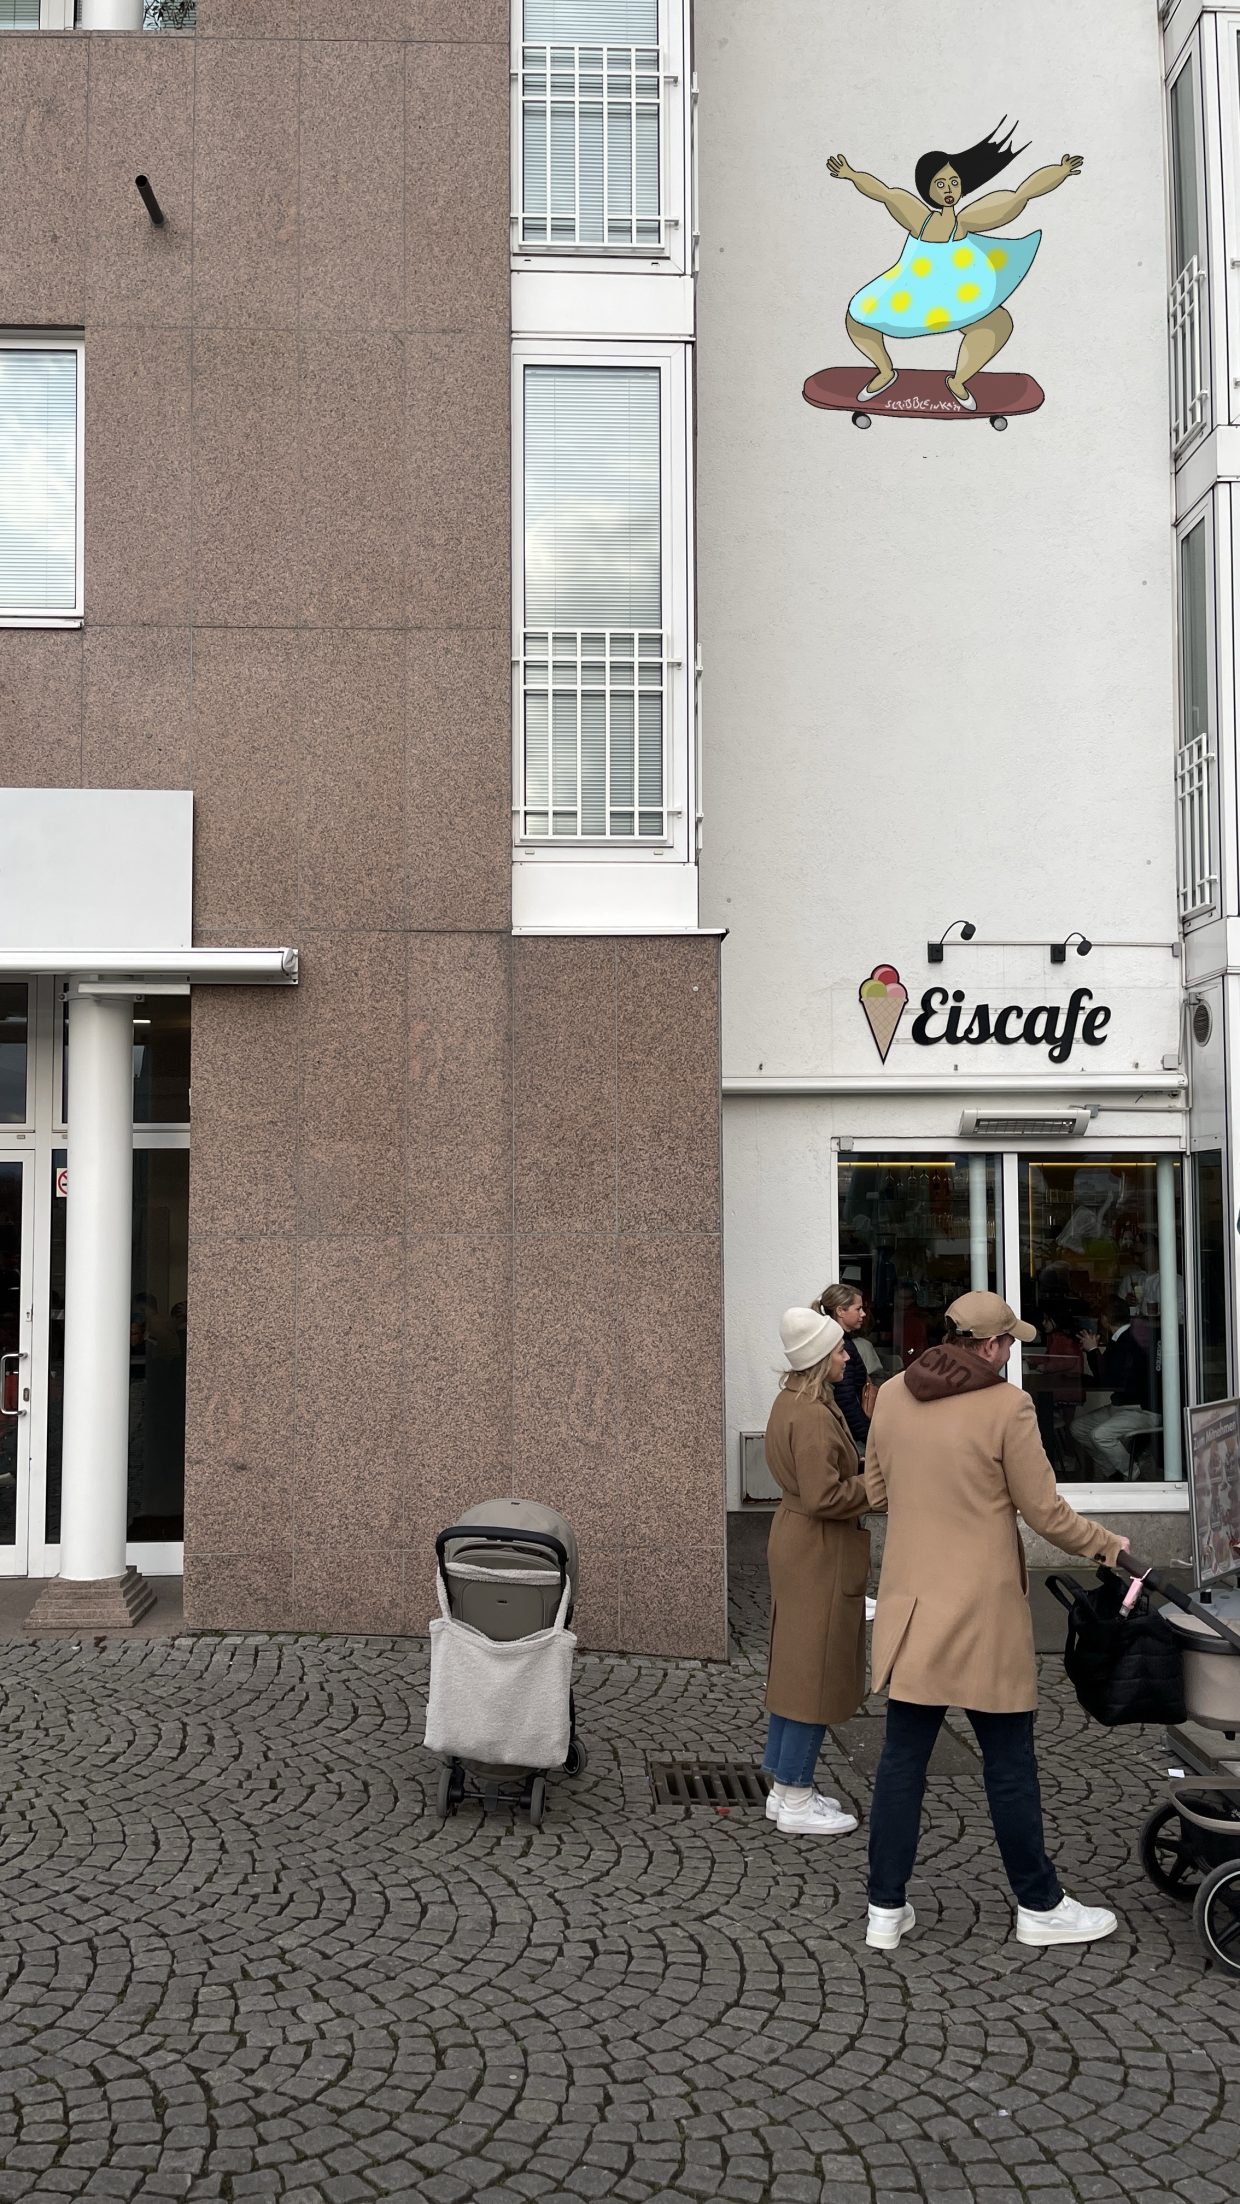 Eingang des Eiscafé Dante in Düsseldorf. Oberhalb des Eingangs findet sich das Gemälde einer skatenden Frau mit dunklem Haar, einem blauen Kleid mit gelben Punkten.